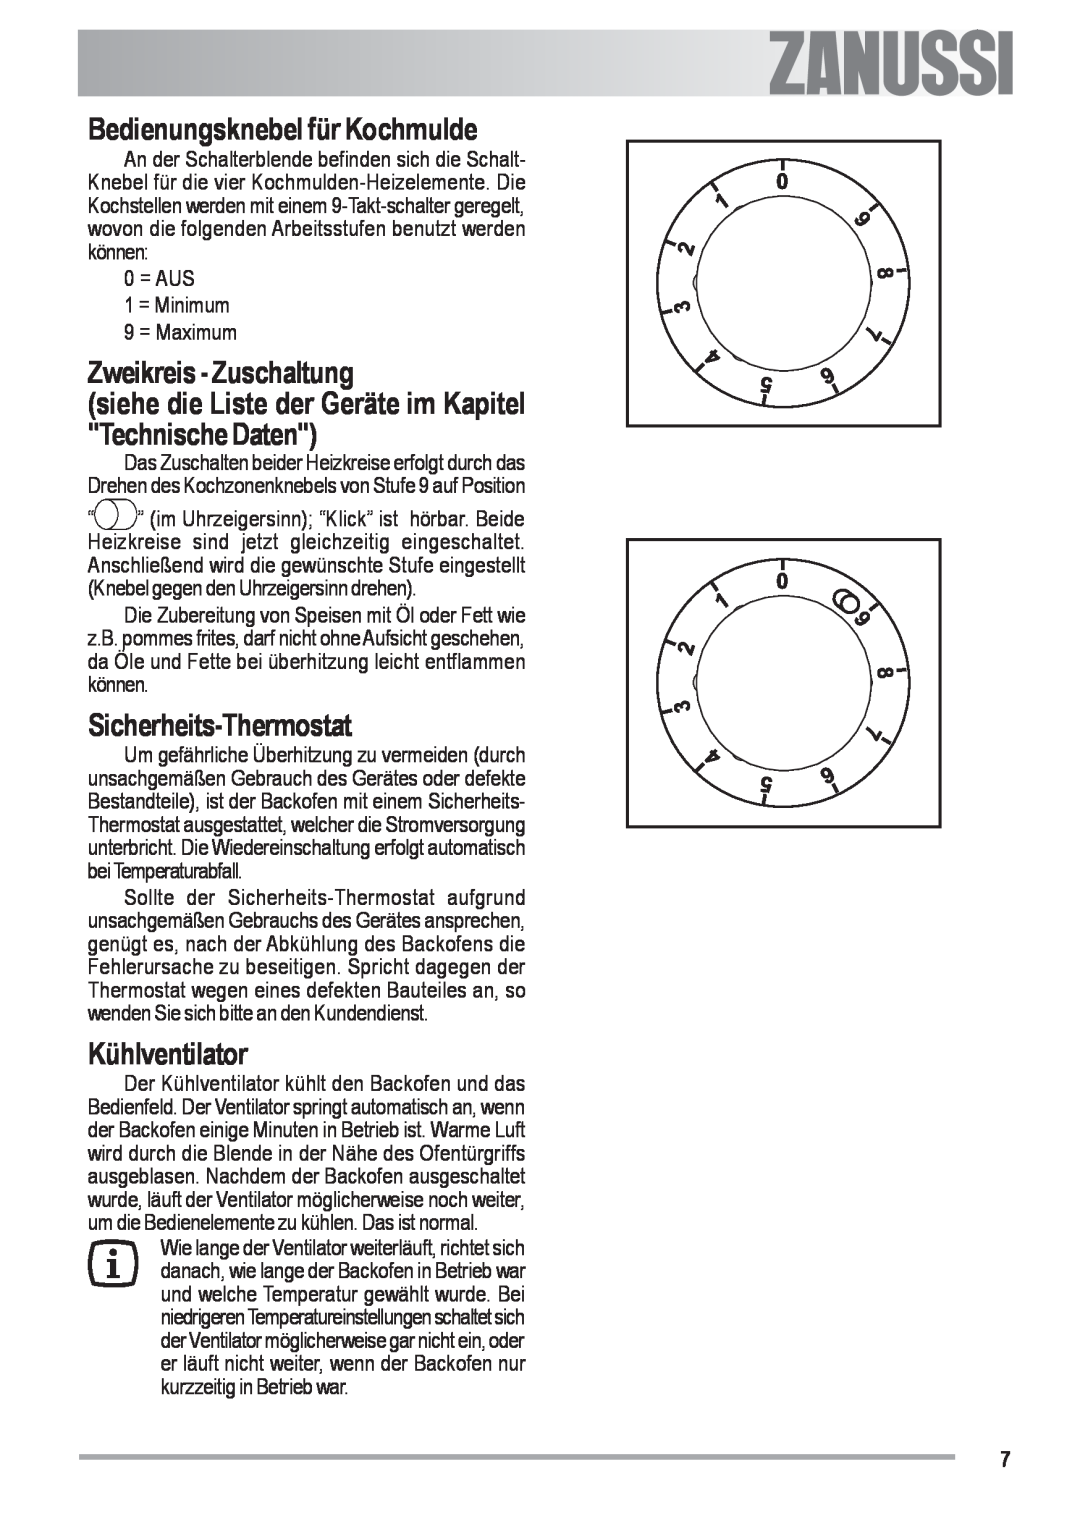 Zanussi ZOU 482 user manual Bedienungsknebel für Kochmulde, Zweikreis - Zuschaltung, Sicherheits-Thermostat, Kühlventilator 